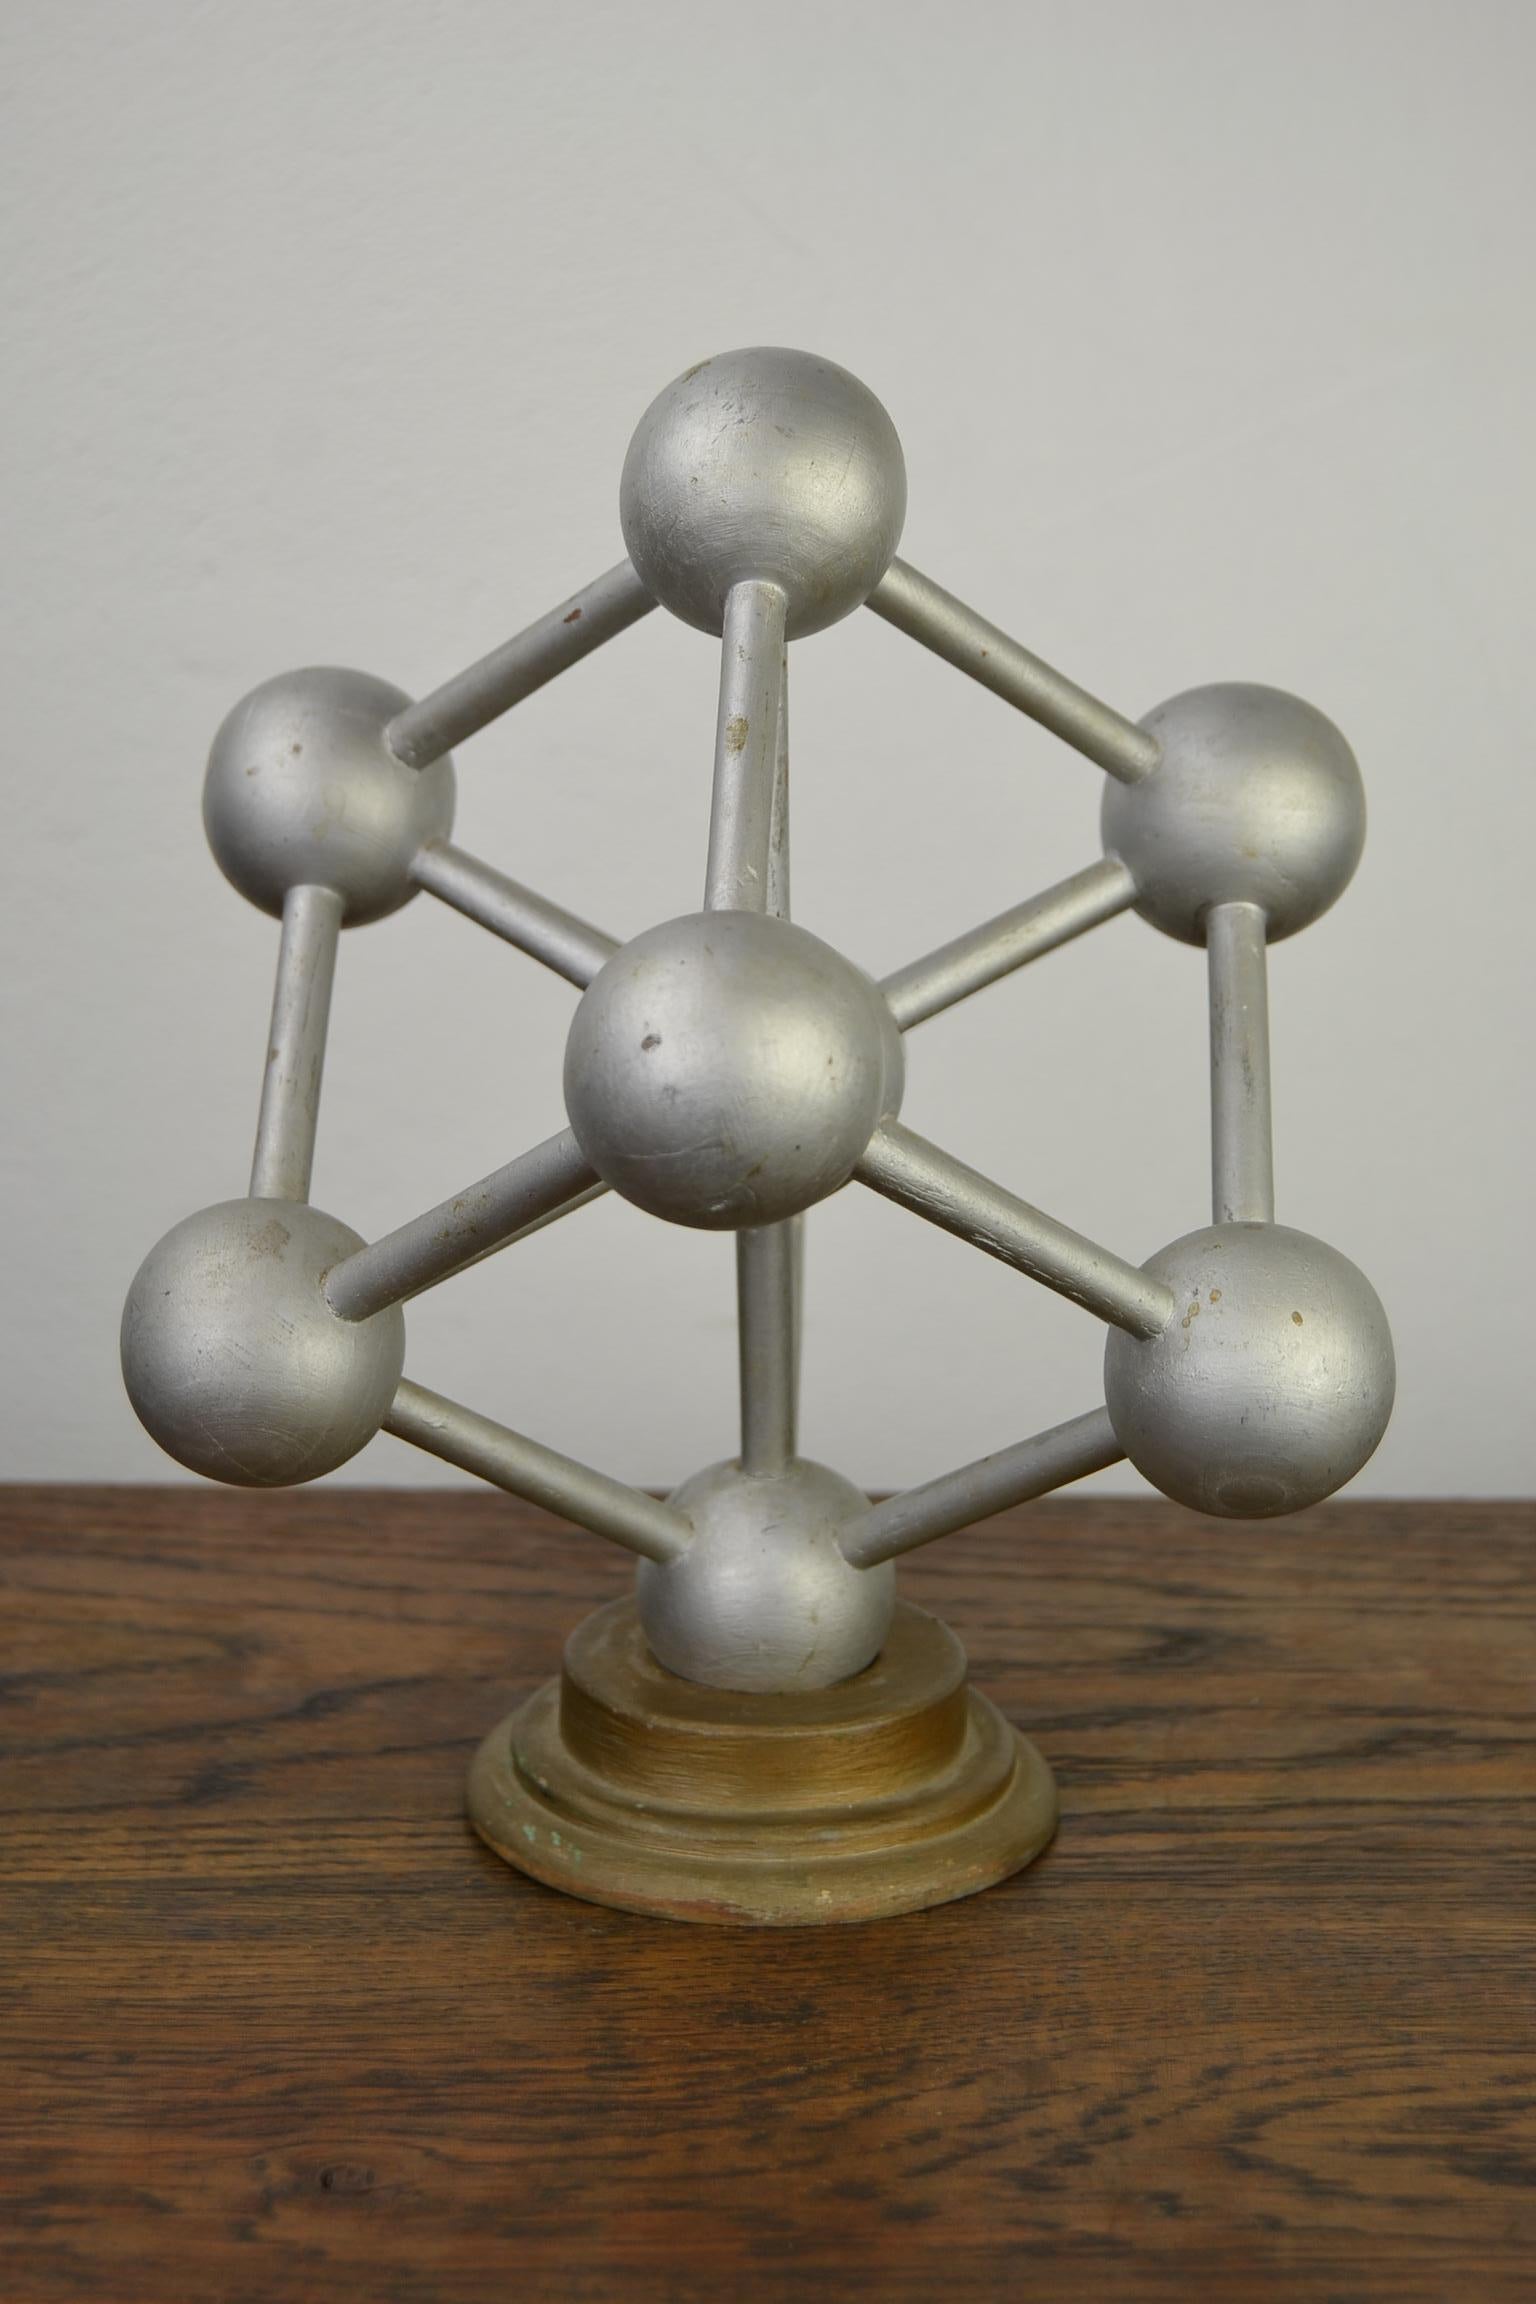 atomium miniature